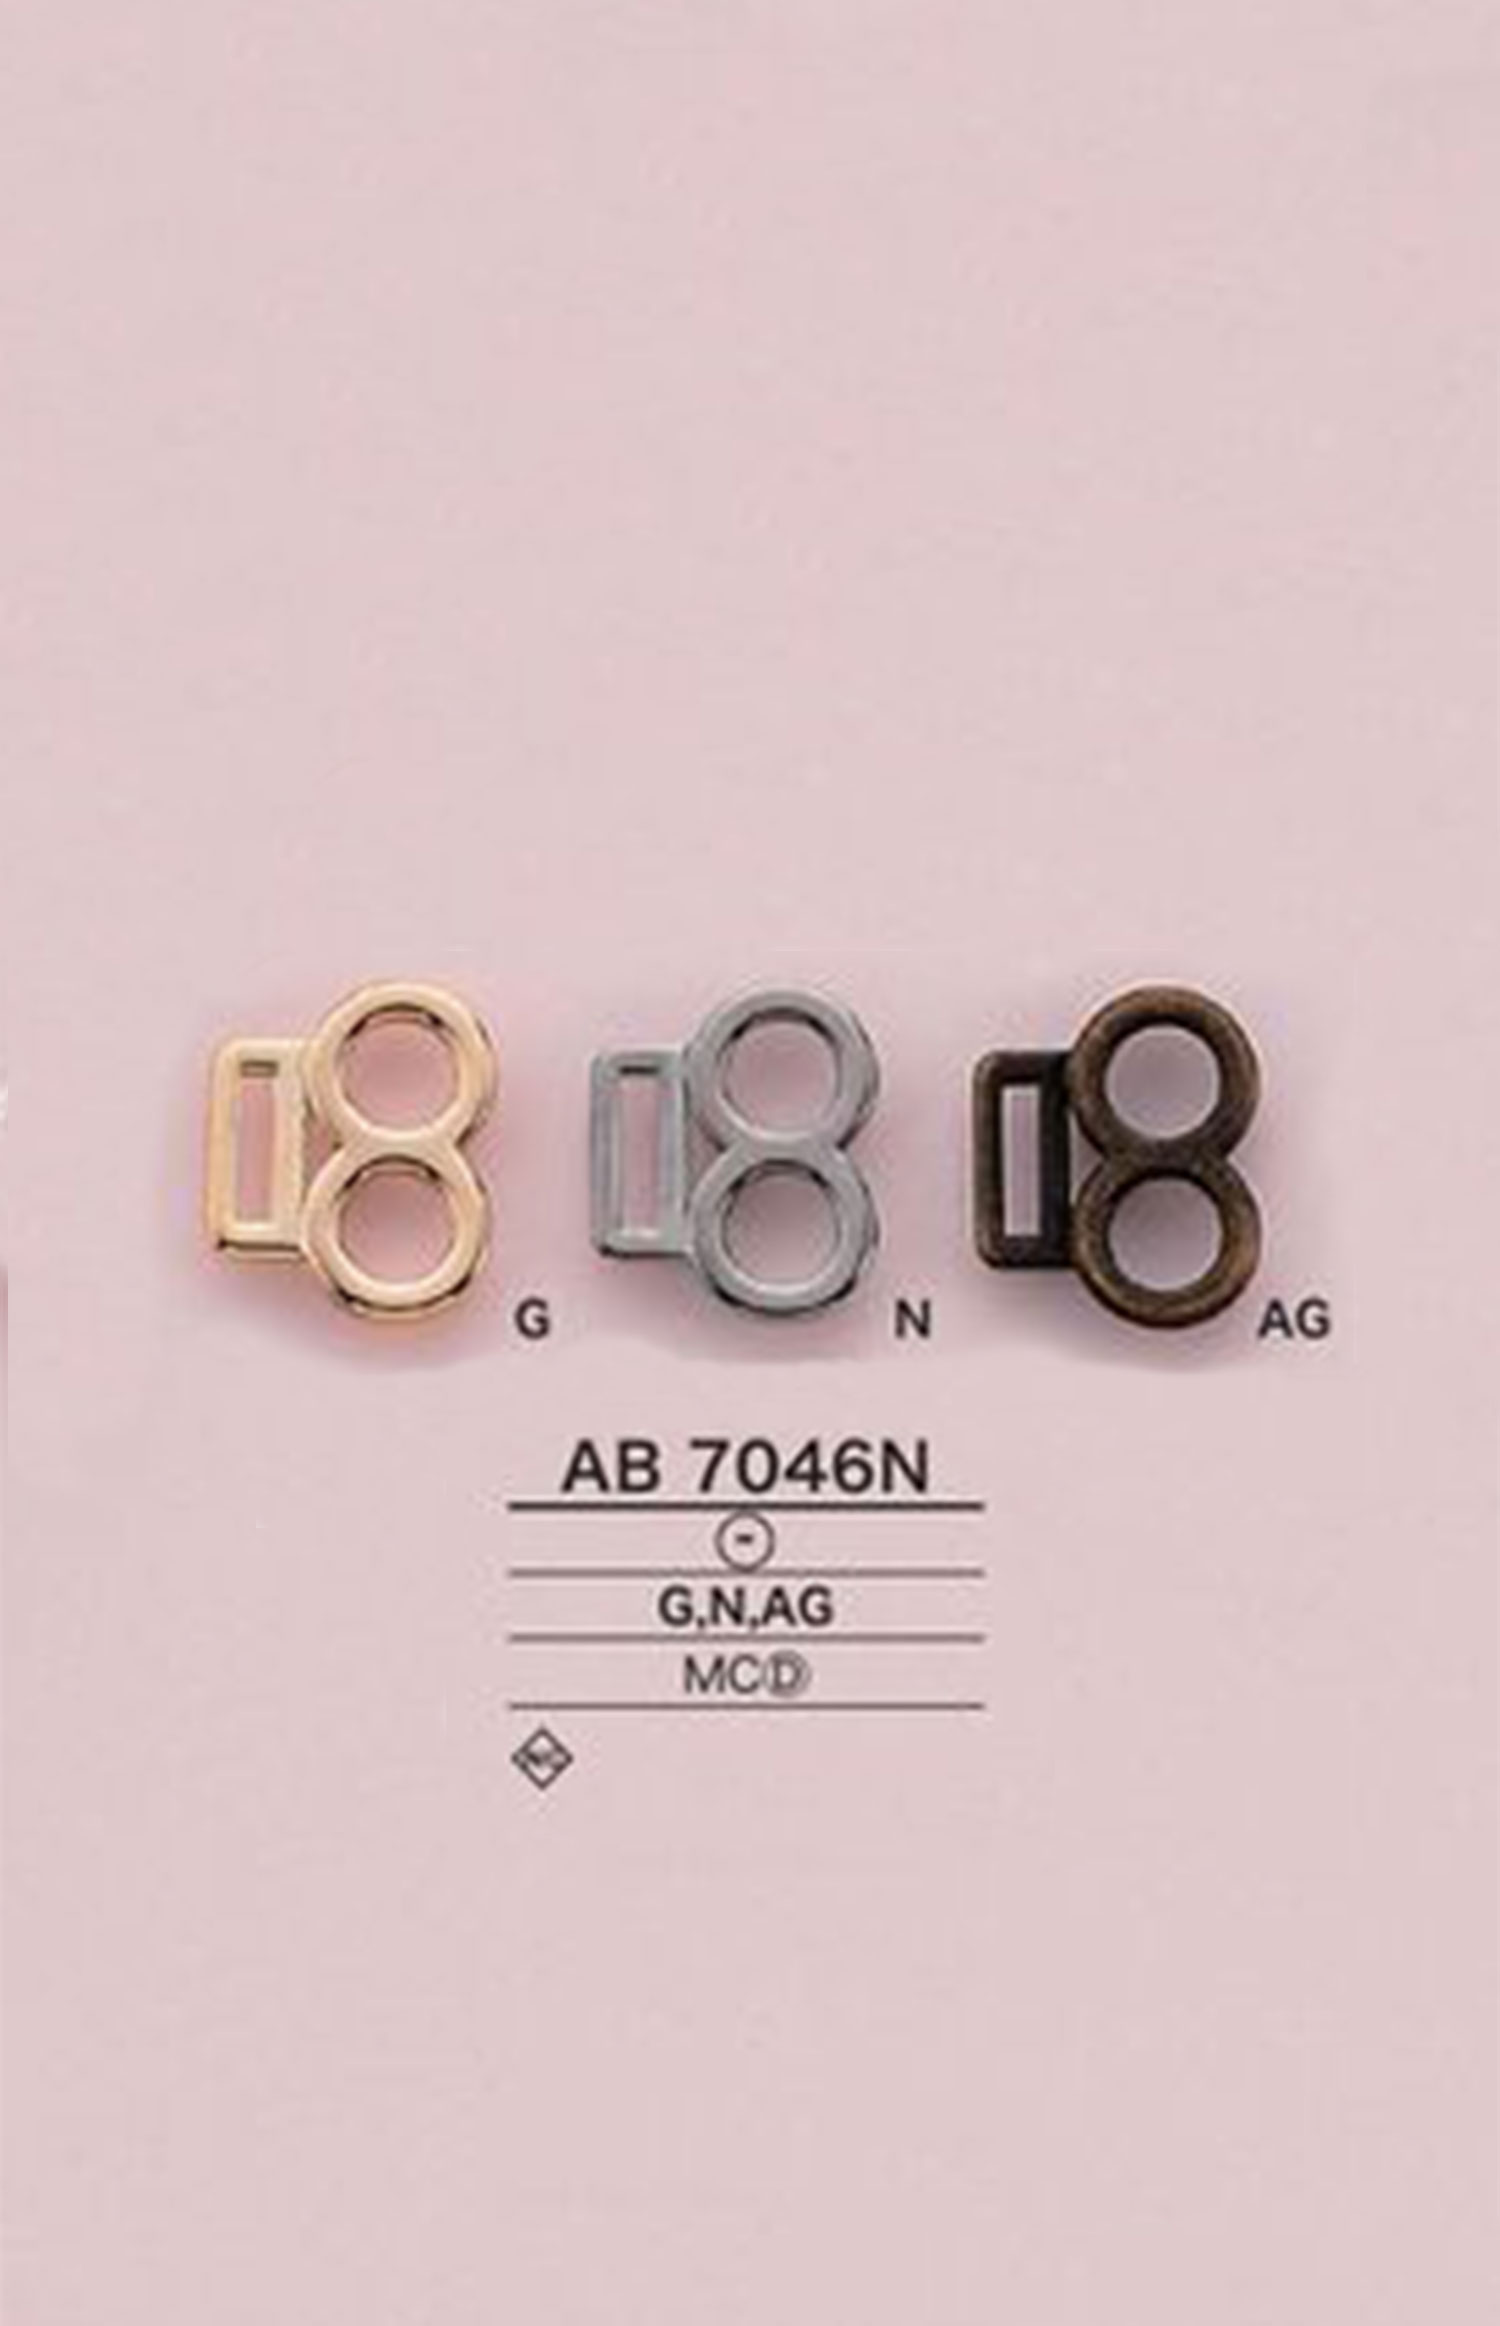 AB7046N 腰帶五金[扣和環] 愛麗絲鈕扣